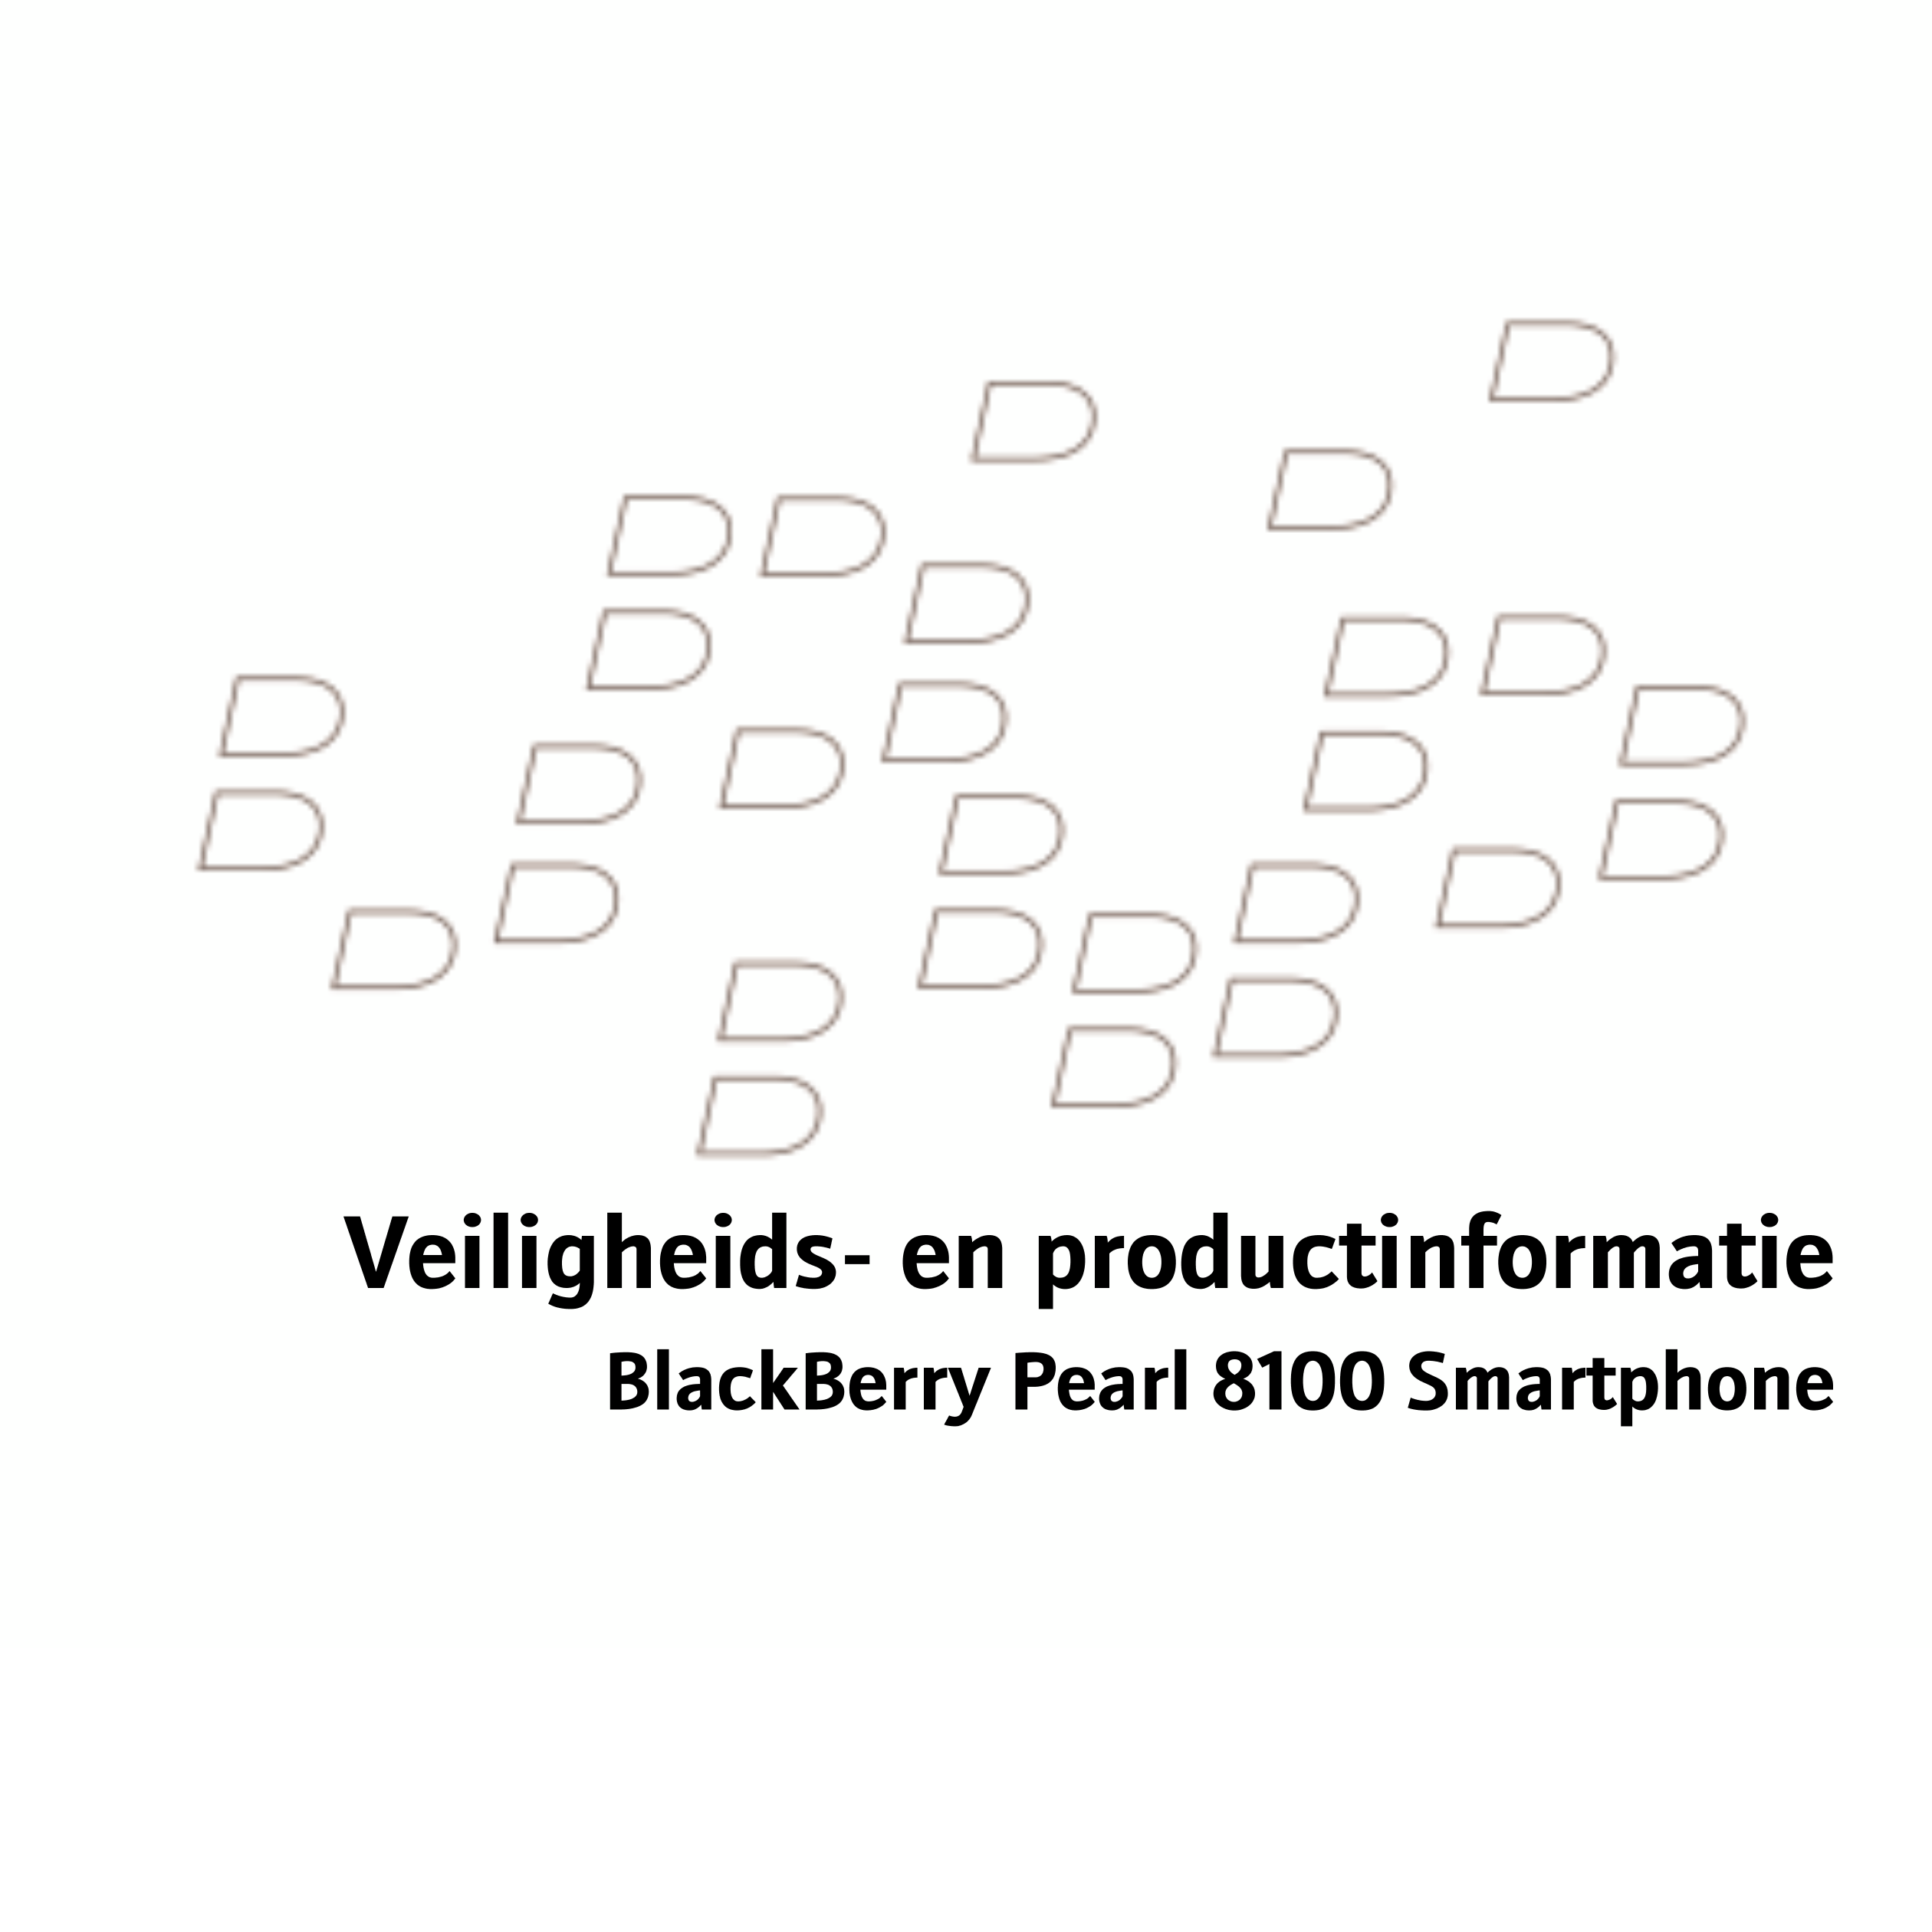 Veiligheids- en productinformatie
BlackBerry Pearl 8100 Smartphone